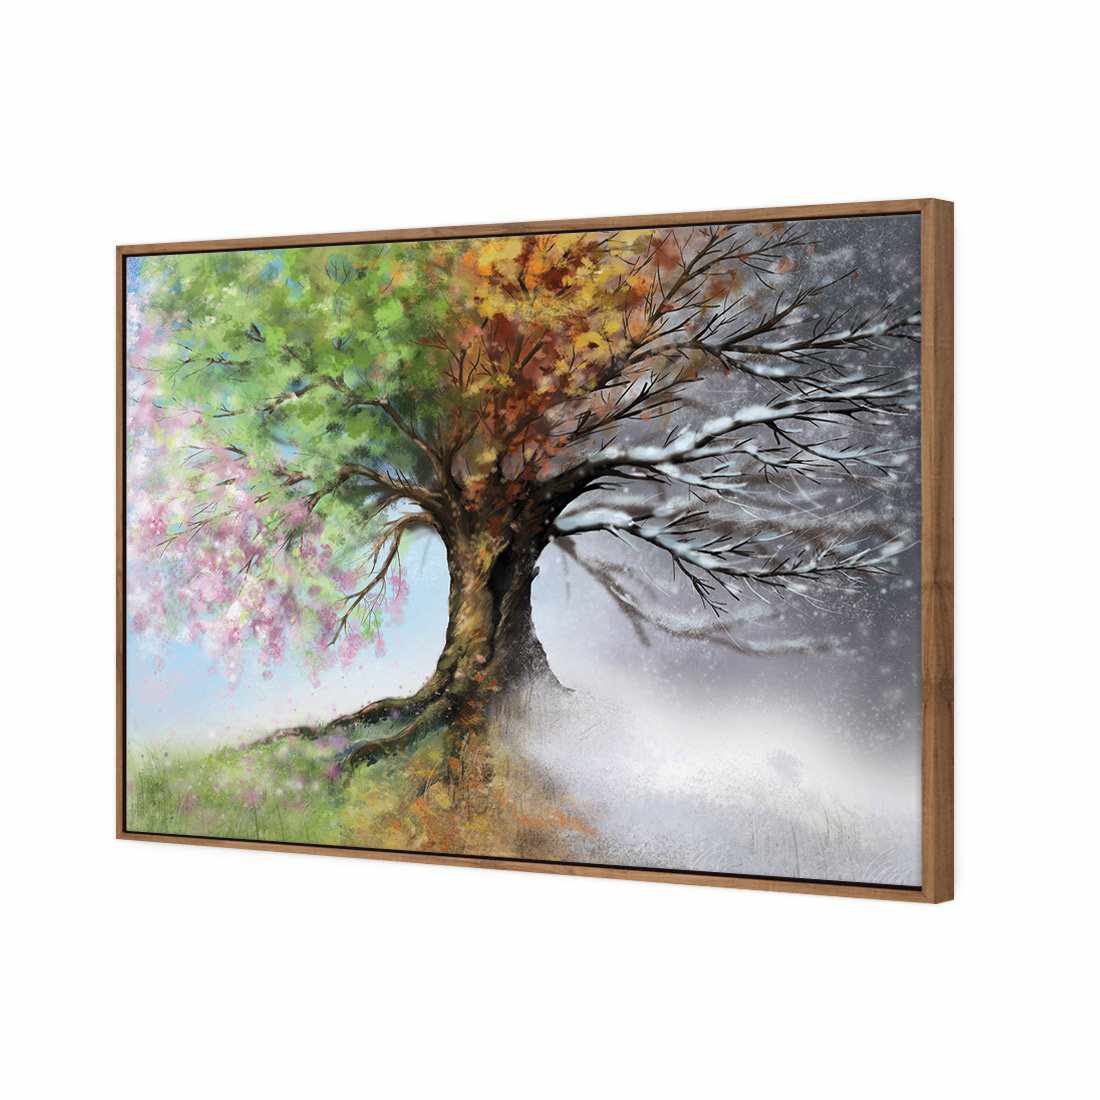 Mystical Tree Canvas Art-Canvas-Wall Art Designs-45x30cm-Canvas - Natural Frame-Wall Art Designs